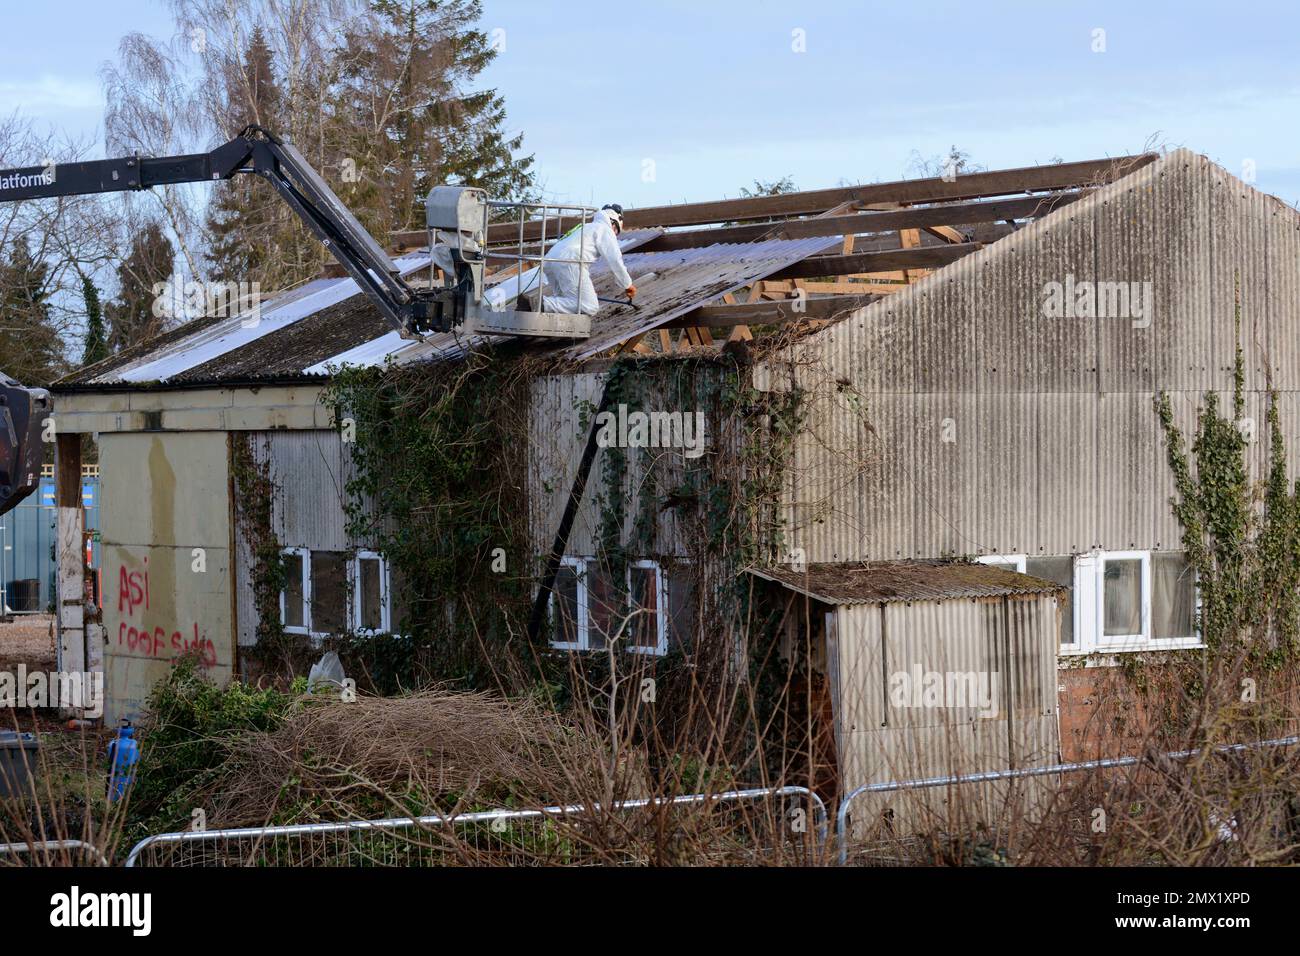 Entfernen von Aspestos von einem Dach, GB Stockfoto